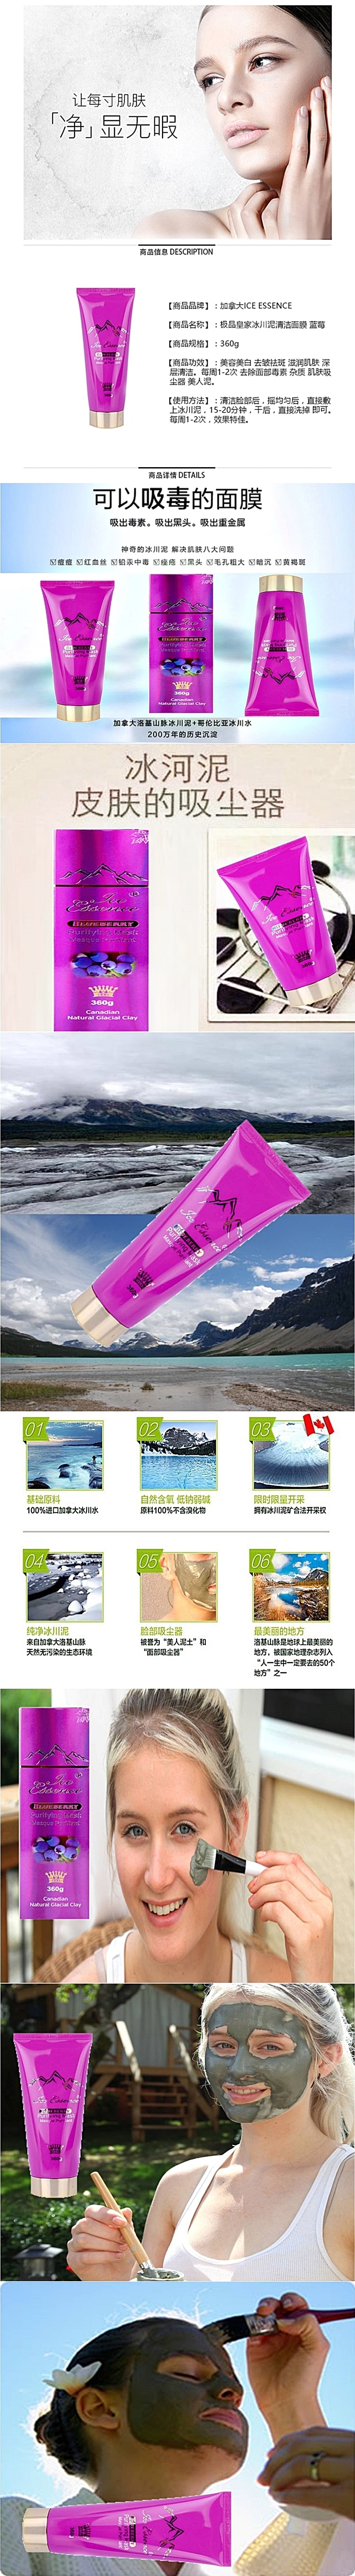 加拿大ICE ESSENCE 極品皇家冰川泥清潔面膜 藍莓 360g